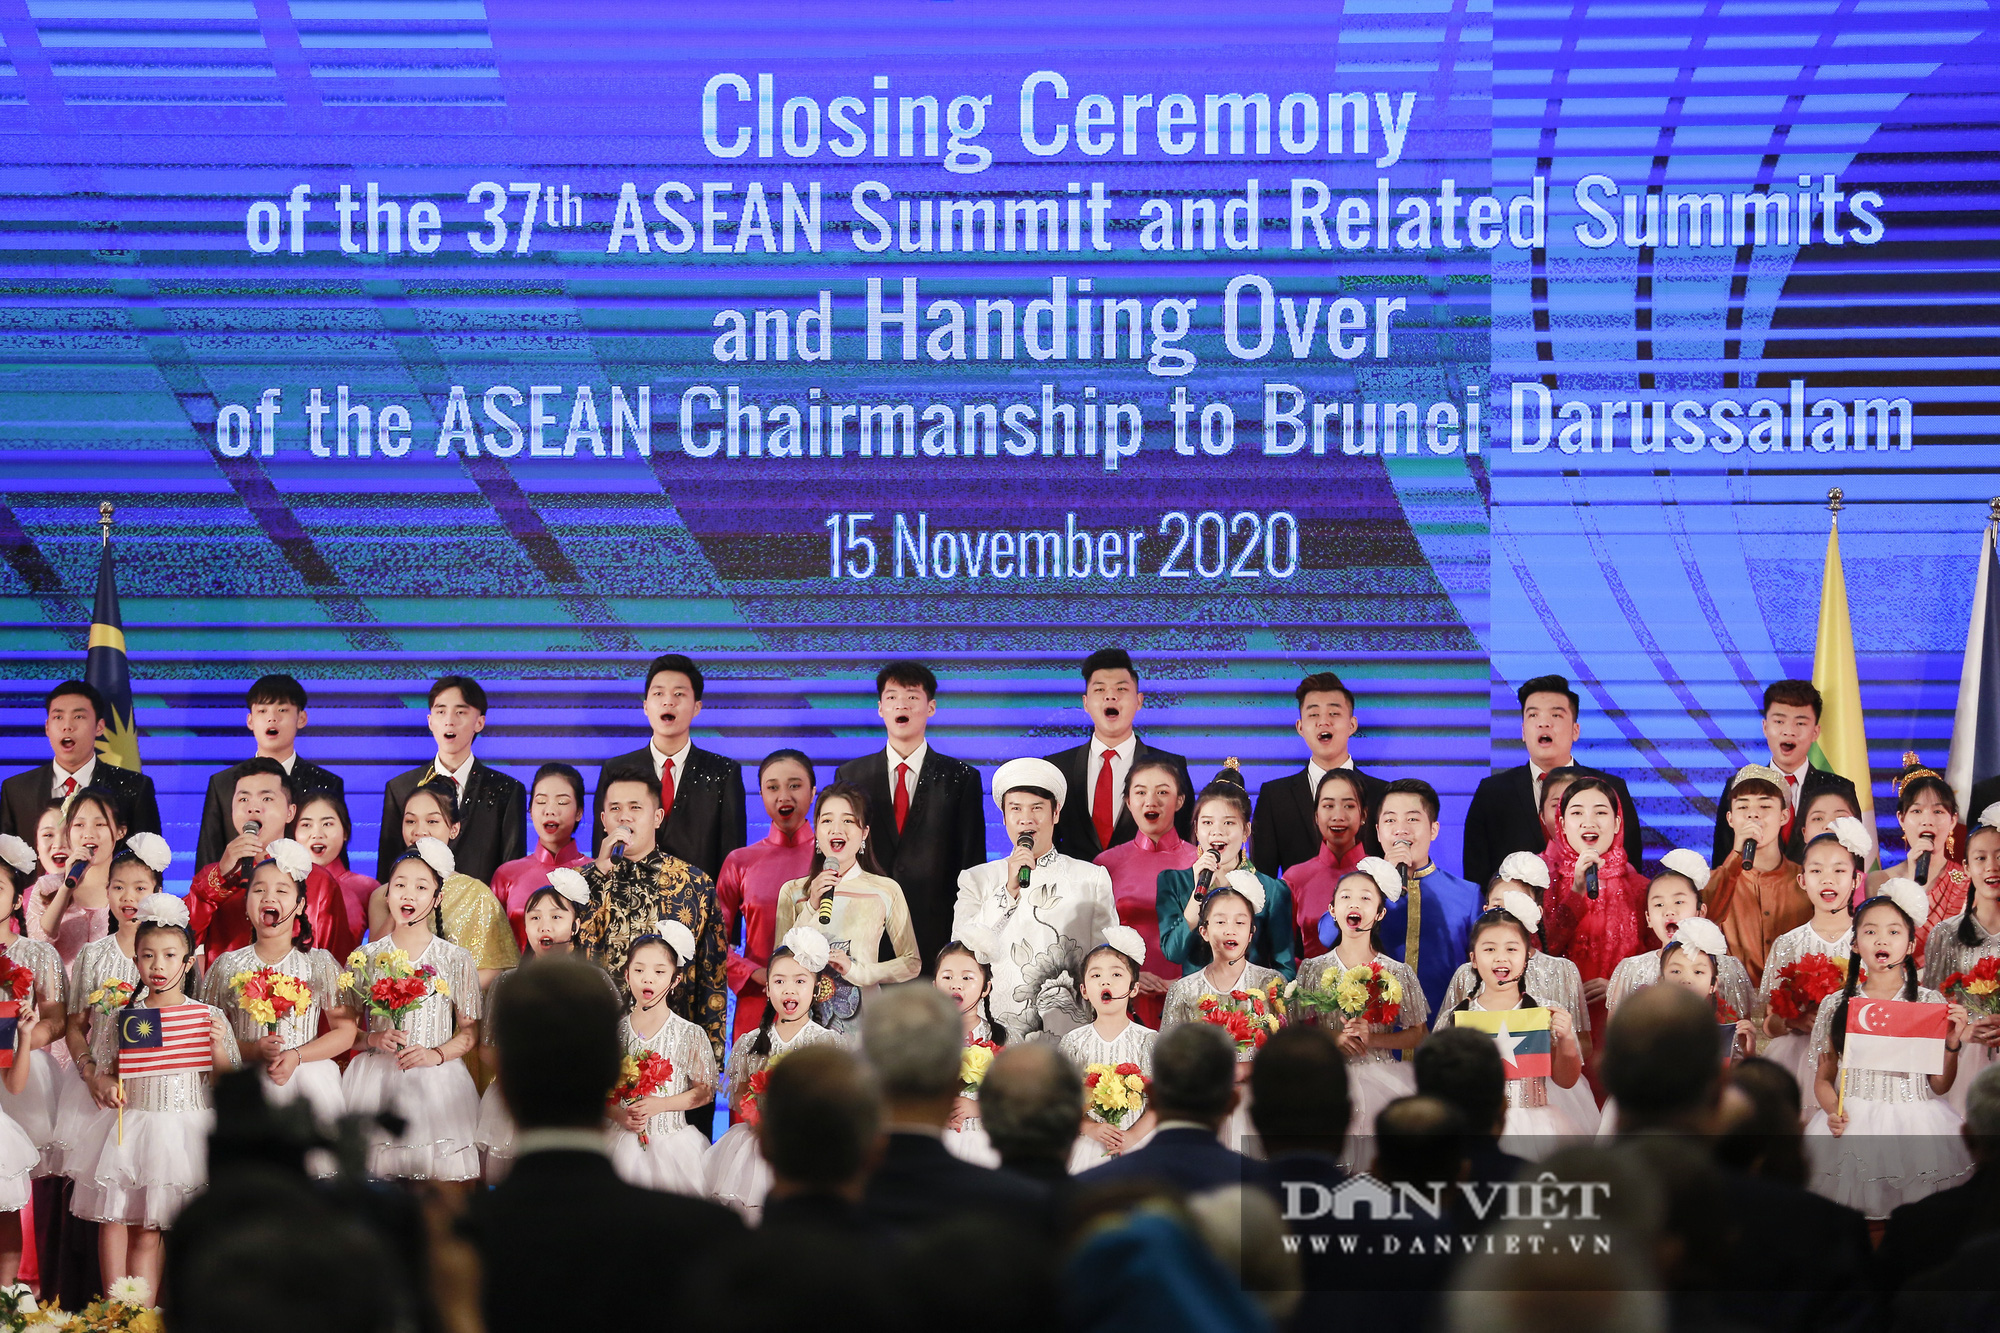 Bế mạc Hội nghị Cấp cao ASEAN 37 và chuyển giao vai trò Chủ tịch ASEAN - Ảnh 8.